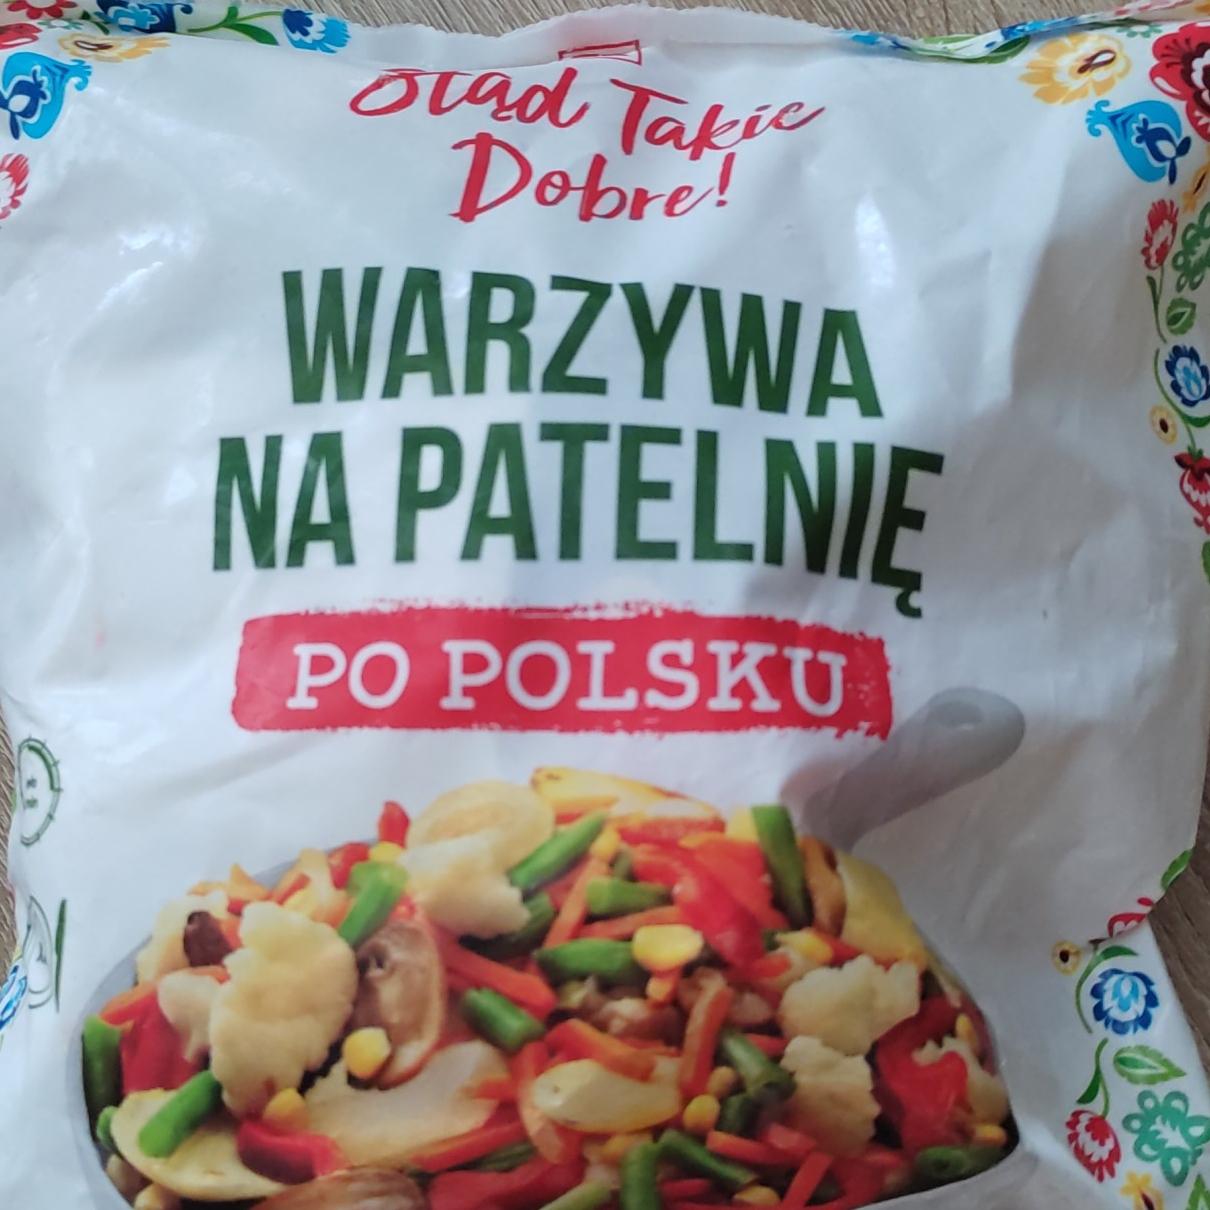 Fotografie - Warzywa na patelnię po polsku K-Stąd Takie Dobre